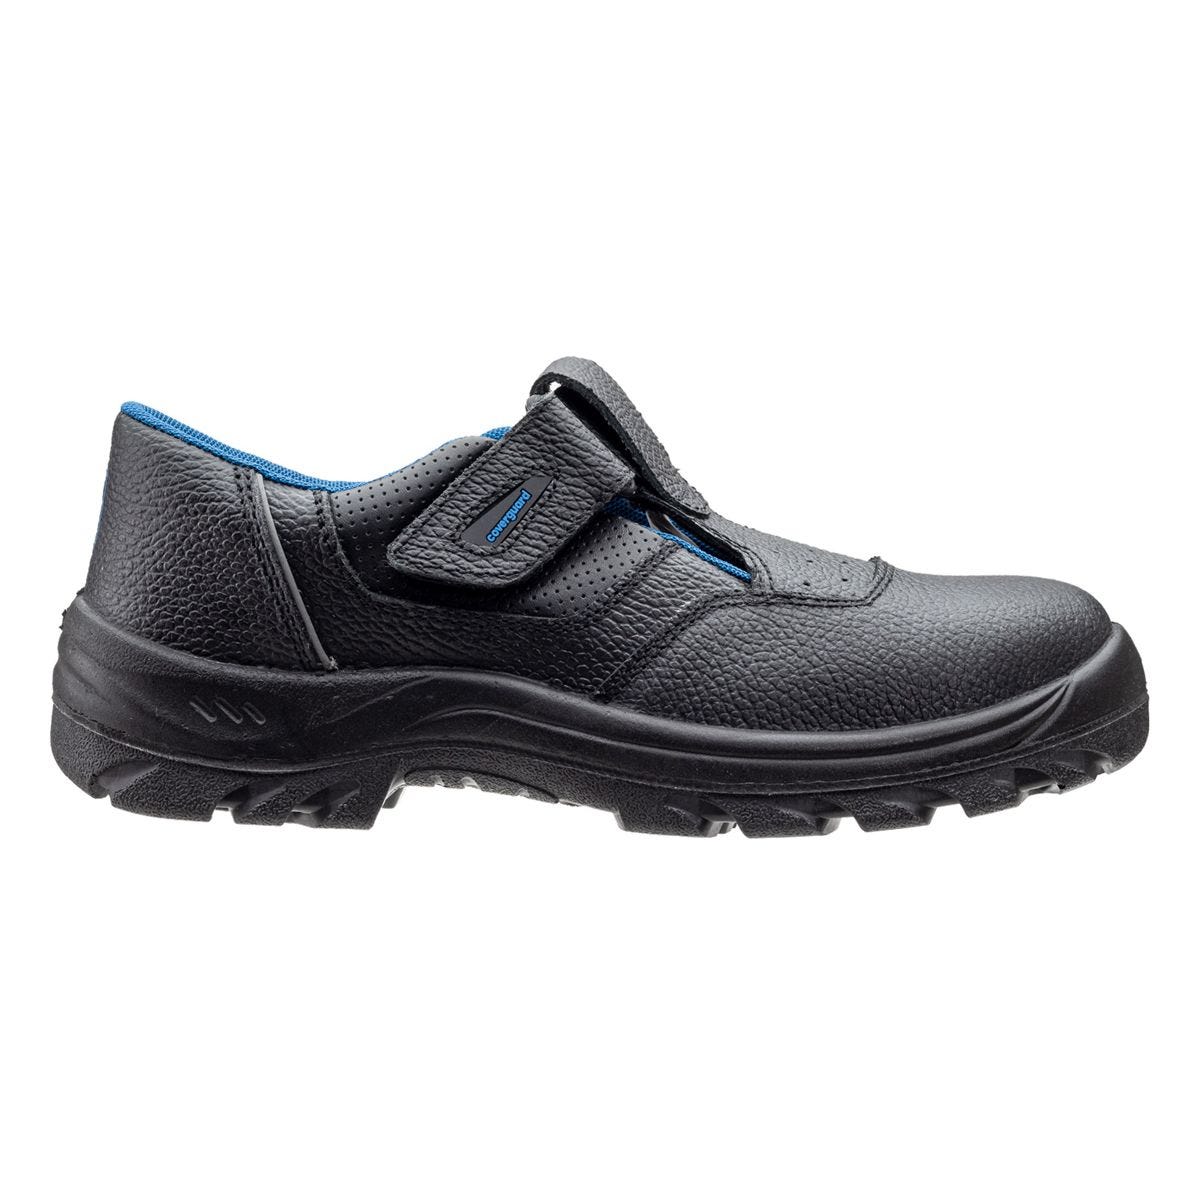 Sandales de sécurité basses Bosco II noir - Coverguard - Taille 36 1